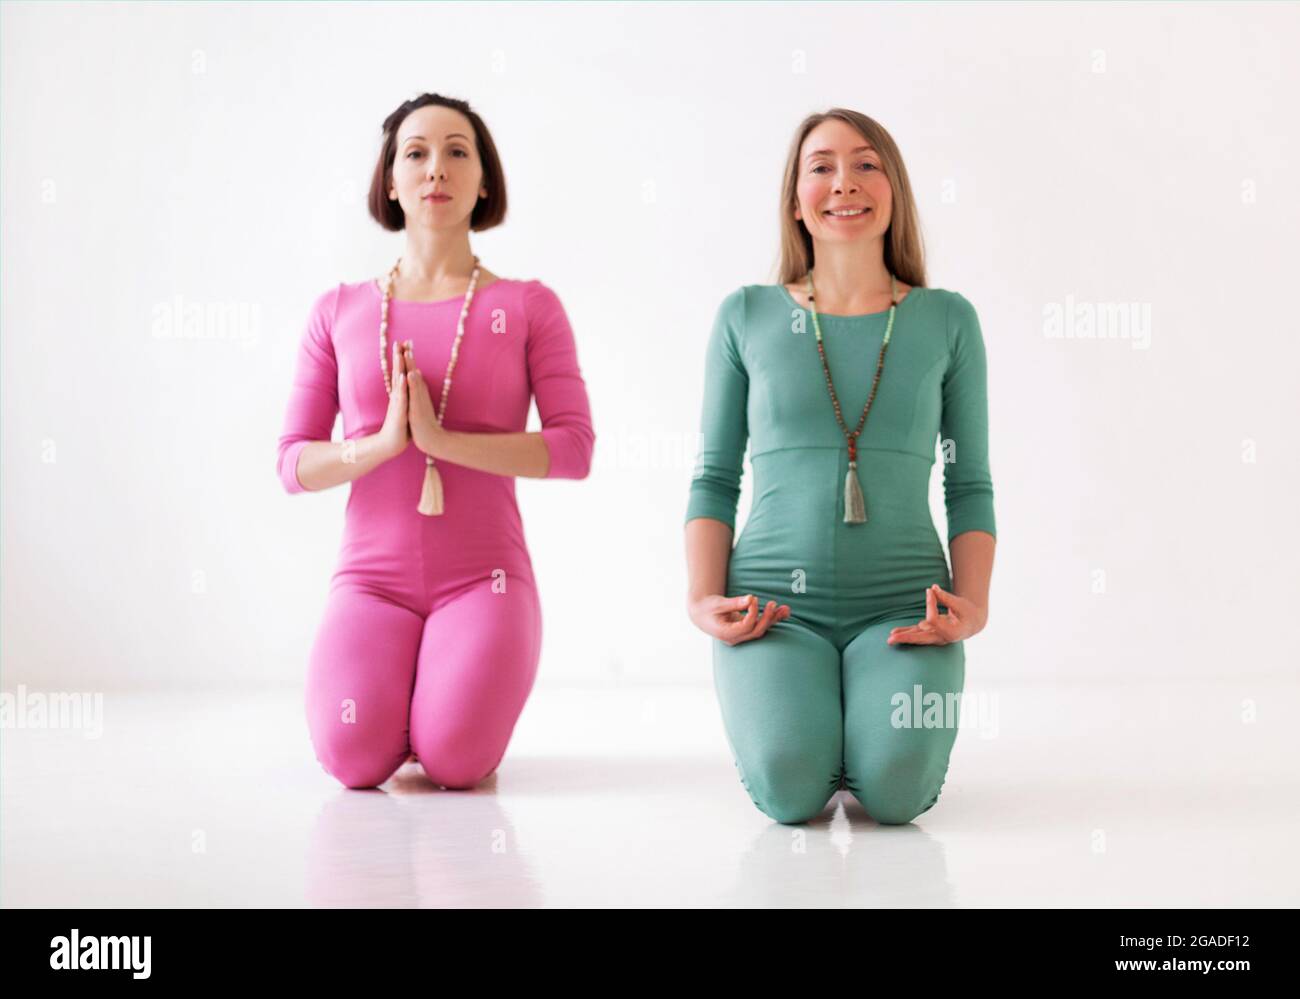 Zwei junge, glückliche, gesunde Frauen in langen Sportanzügen, die zusammen Yoga-Asanas während eines ziemlich meditativen Trainings oder einer Gruppe Yoga-Klasse durchführen, isoliert Stockfoto